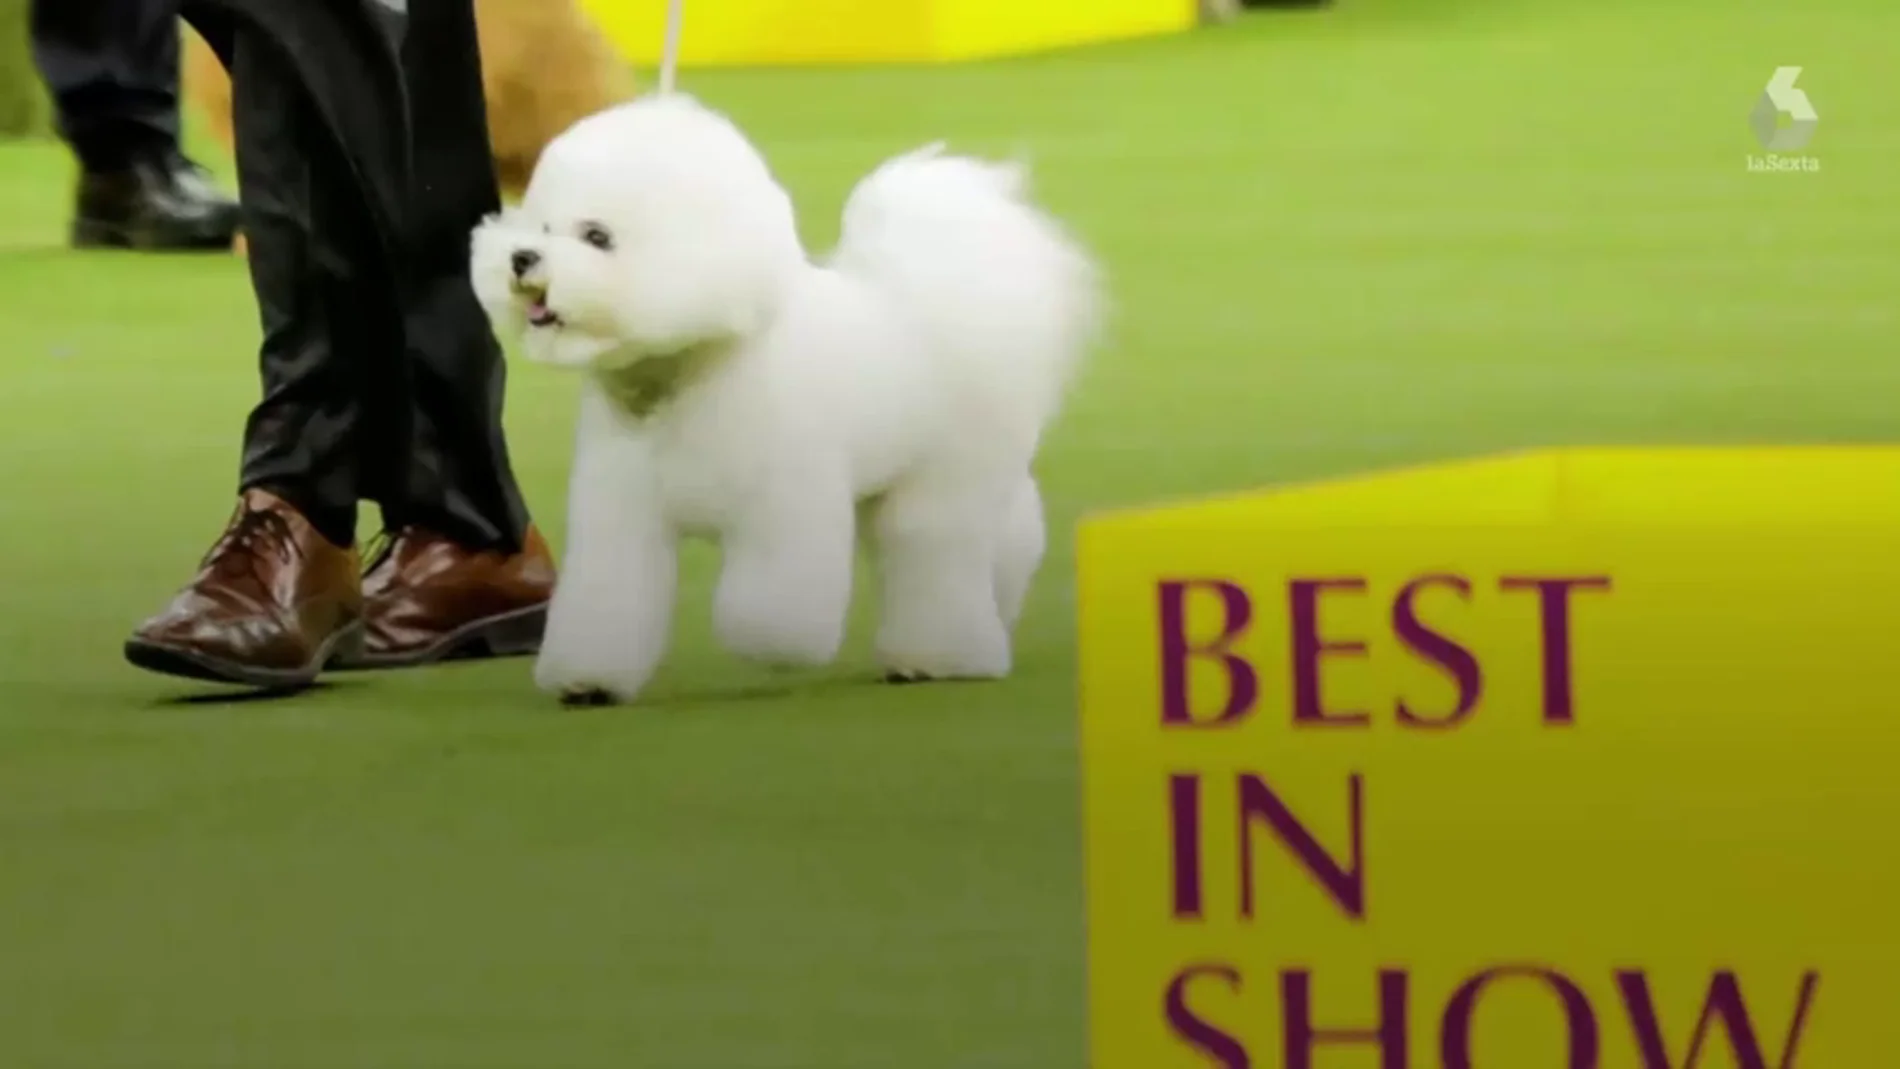 Este es Flynn, el ganador del Westminster Dog Show, el certamen canino más importante del mundo